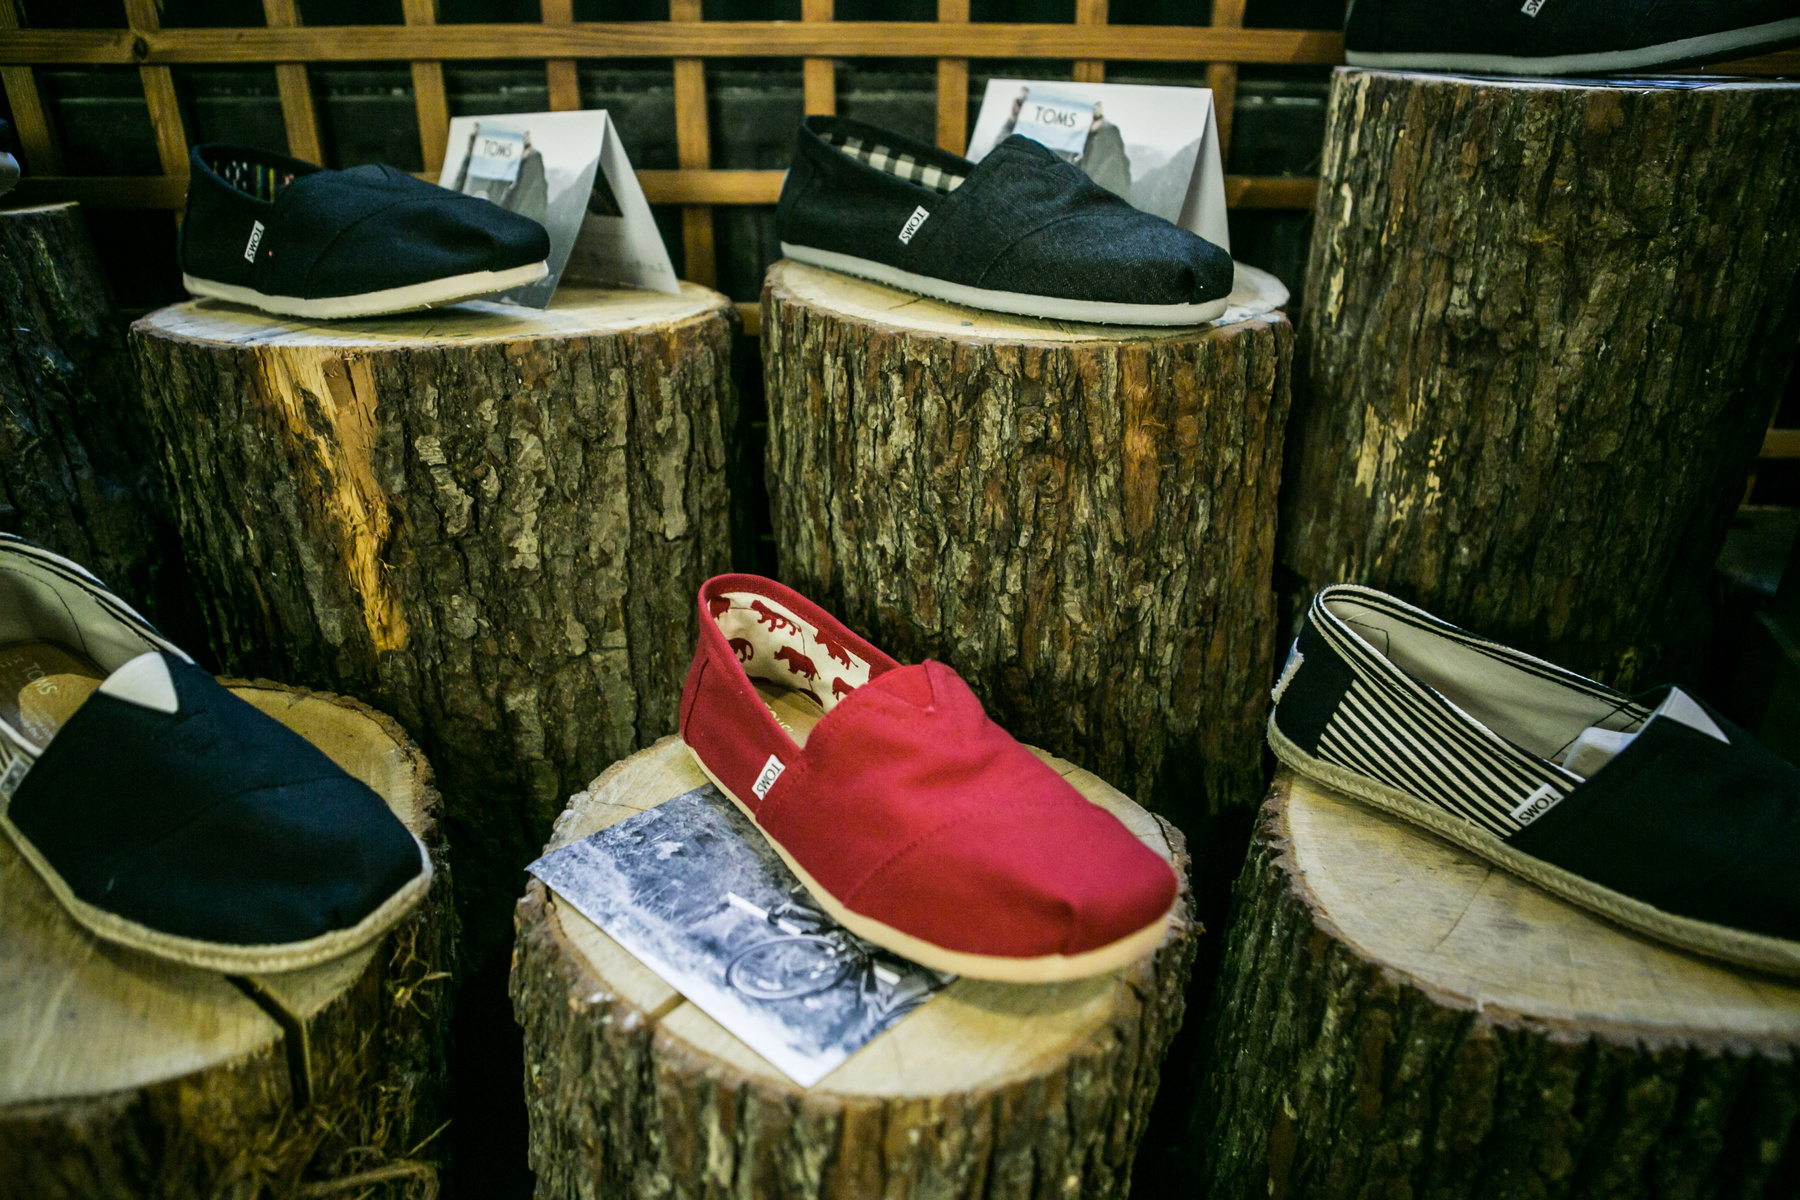 A The Garden Studióban, a Vitkovics Mihály utca 3-5-ben a legmenőbb magyar tervezők ruháin kívül ilyen cipőket is talál. Nekik webshopljuk is van, az egyszínű alapdarabokért 14600, a különlegesebb cipőkért 19000 forintot kérnek.